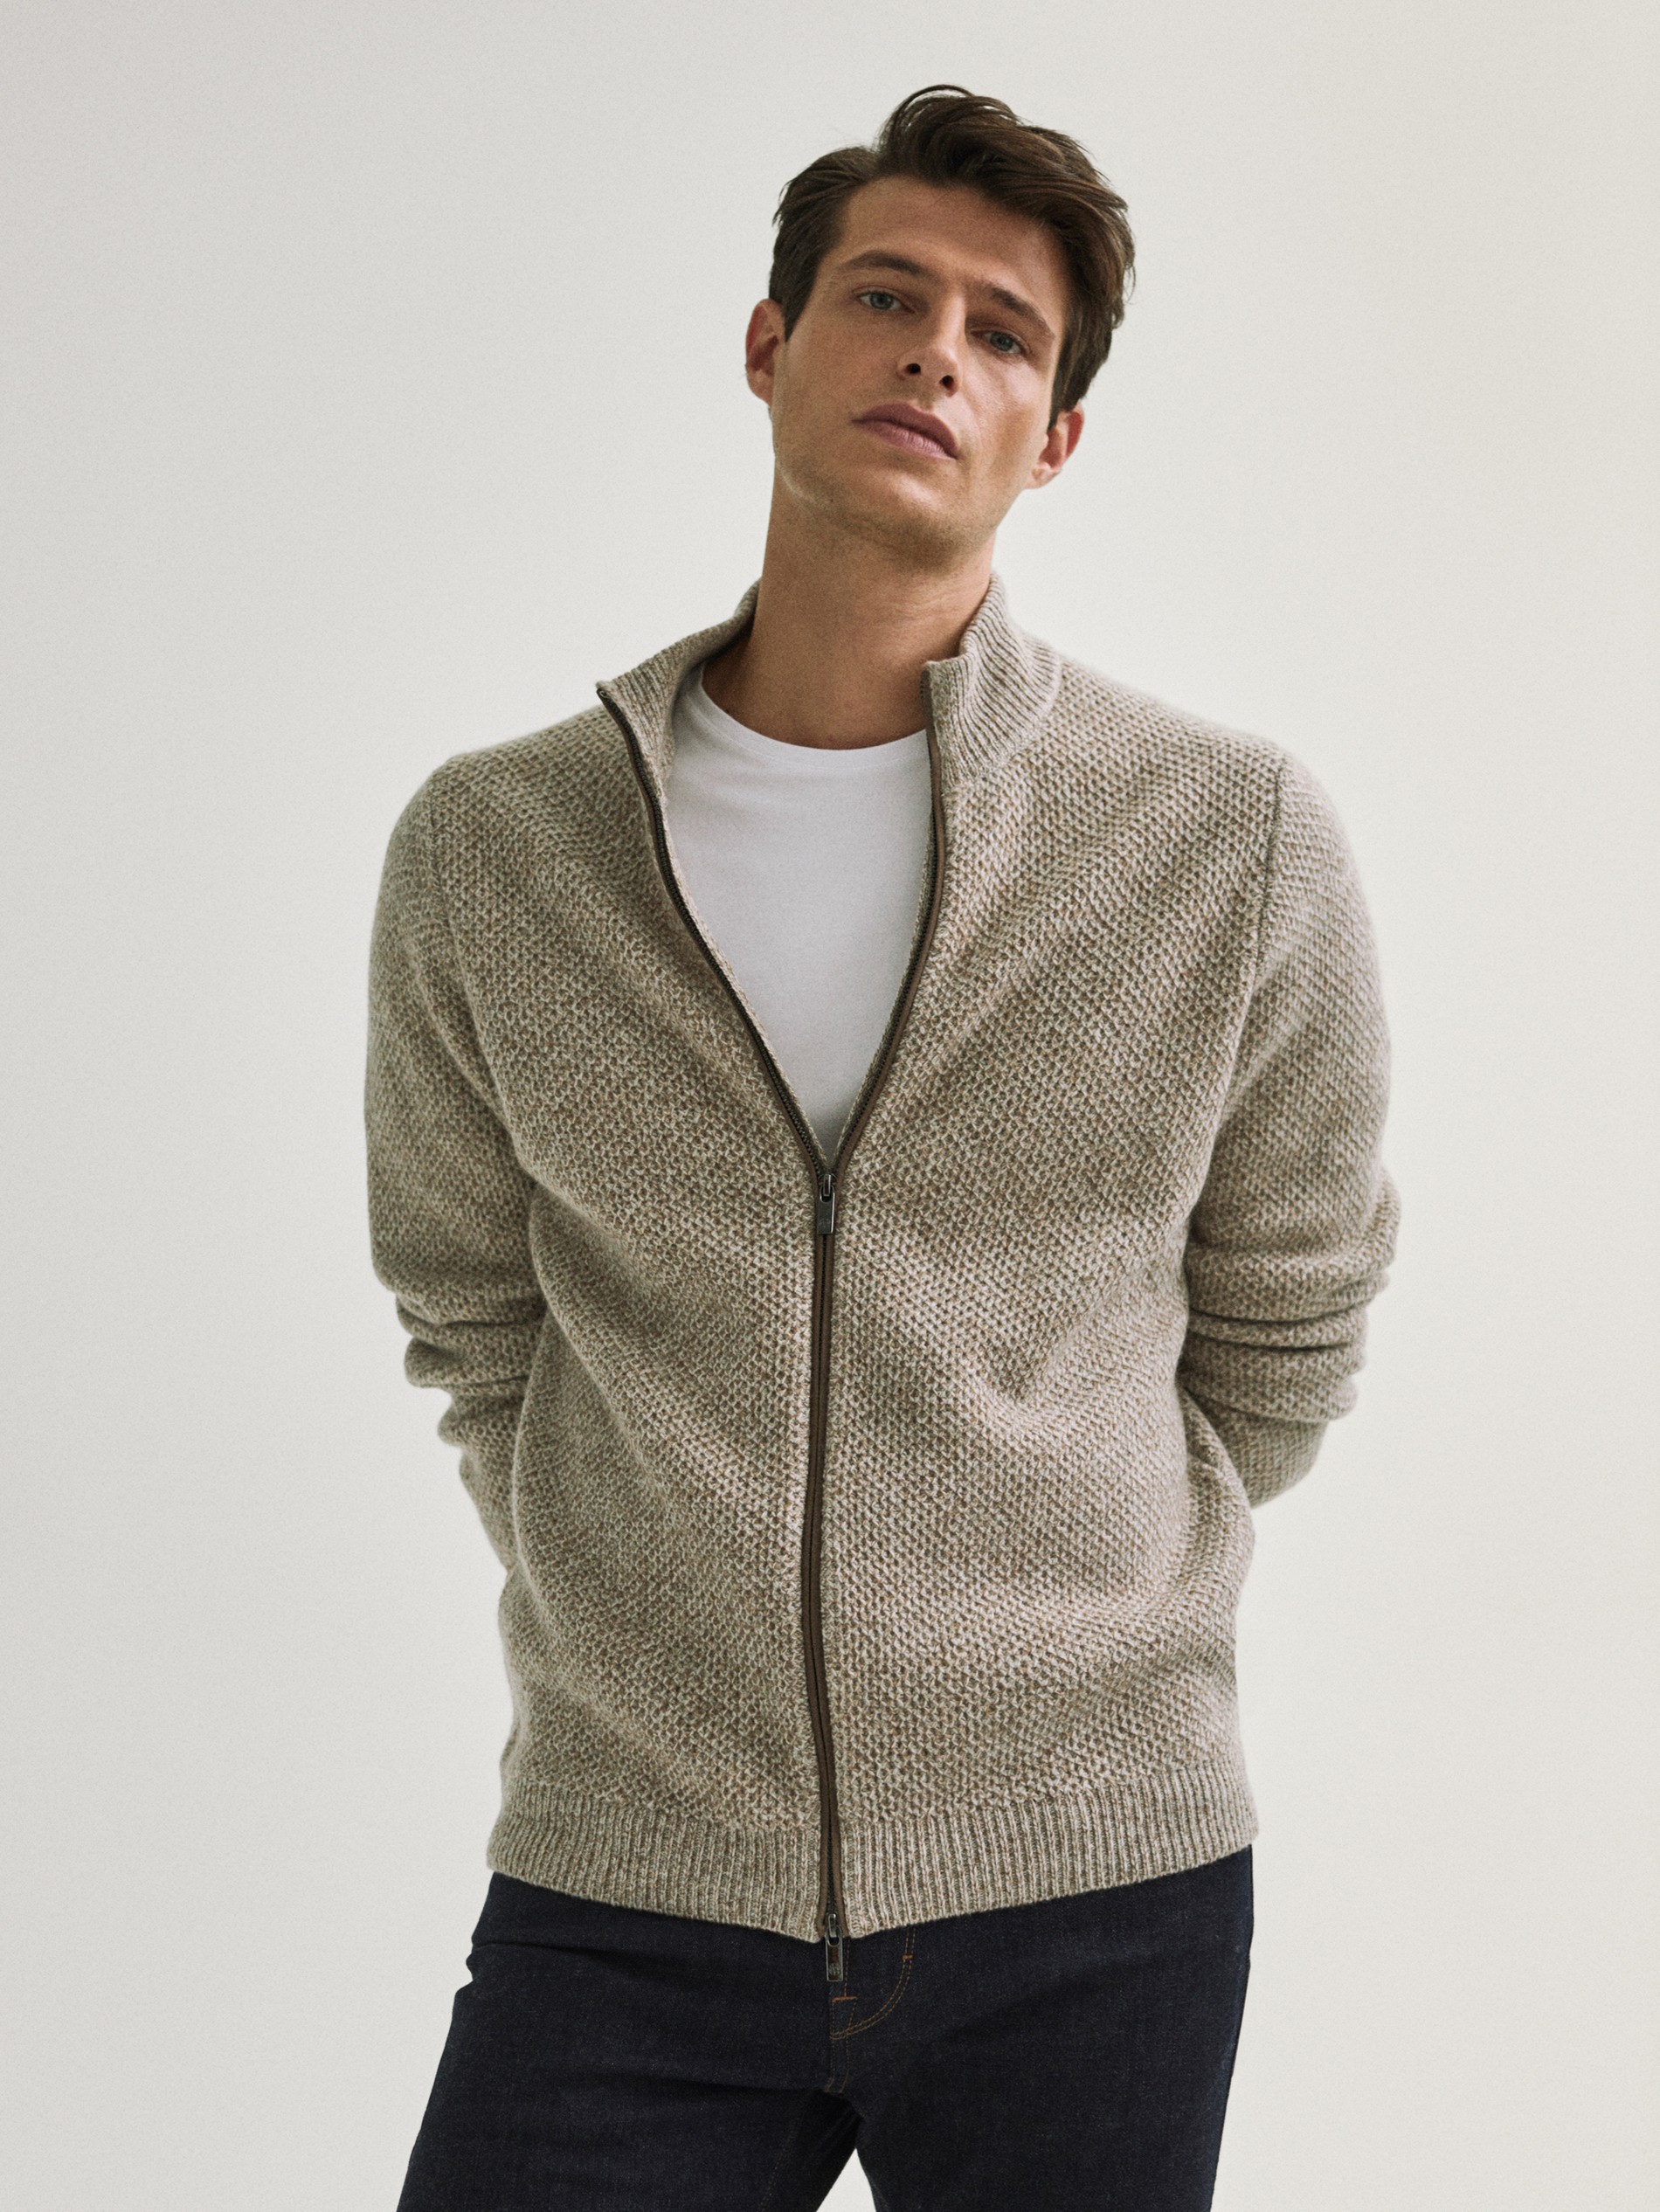 massimo dutti wool cashmere sweater